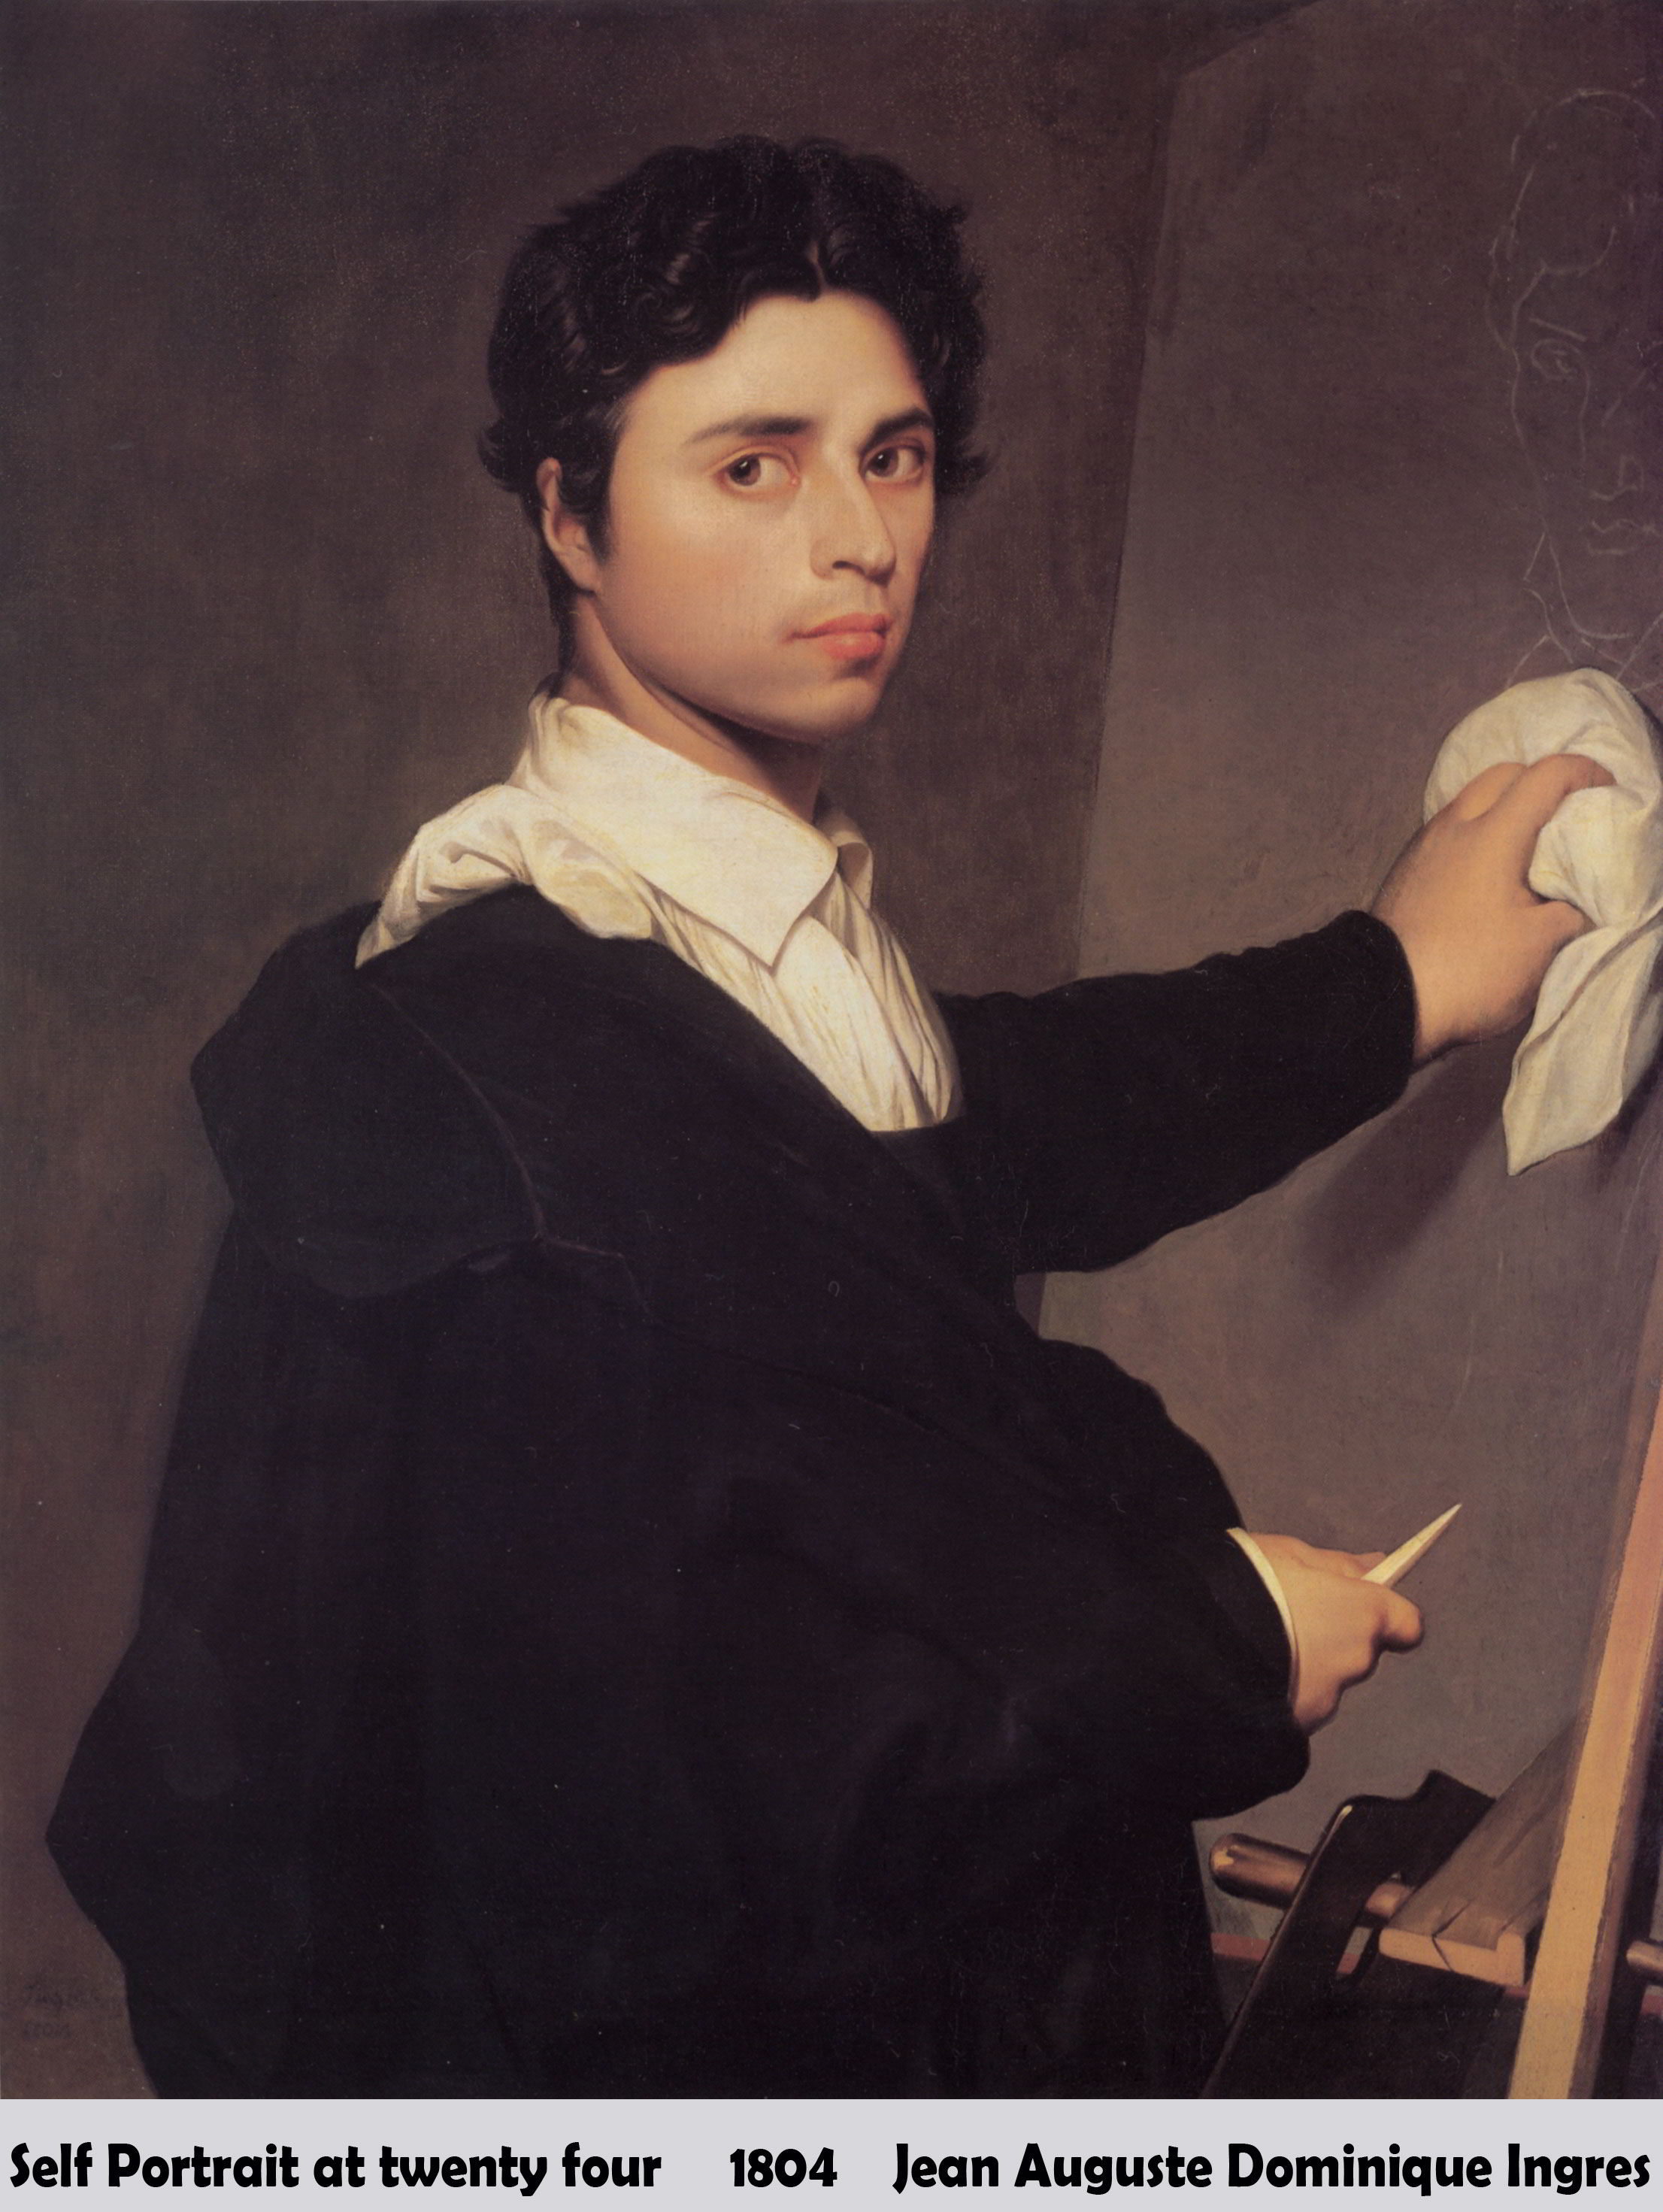 Self Portrait at twenty four by Jean Auguste Dominique Ingres-Portrait Painting